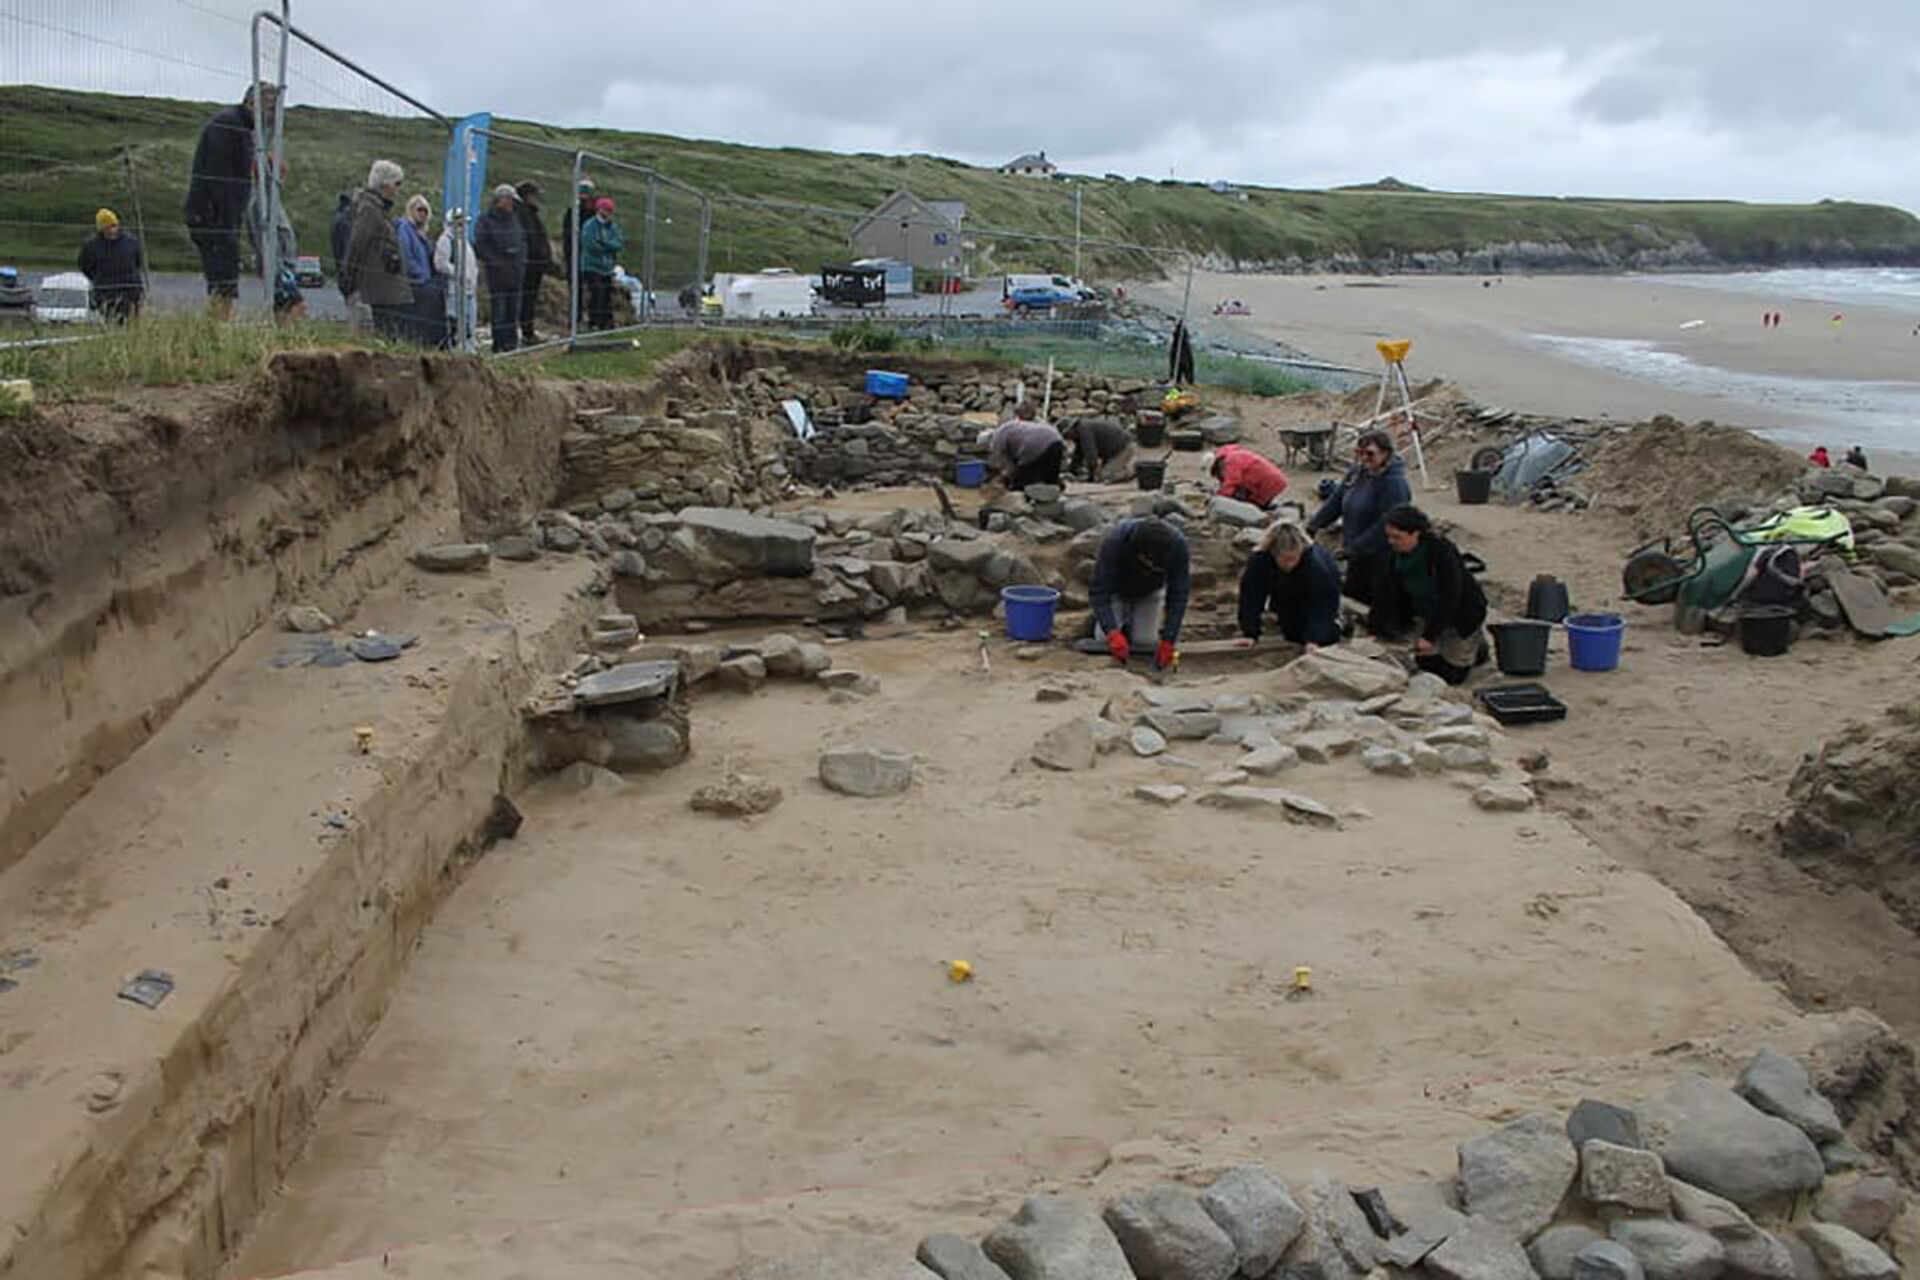 Cemitério na areia: 200 esqueletos da Idade Média são encontrados em praia no Reino Unido (FOTOS) - Sputnik Brasil, 1920, 05.07.2021